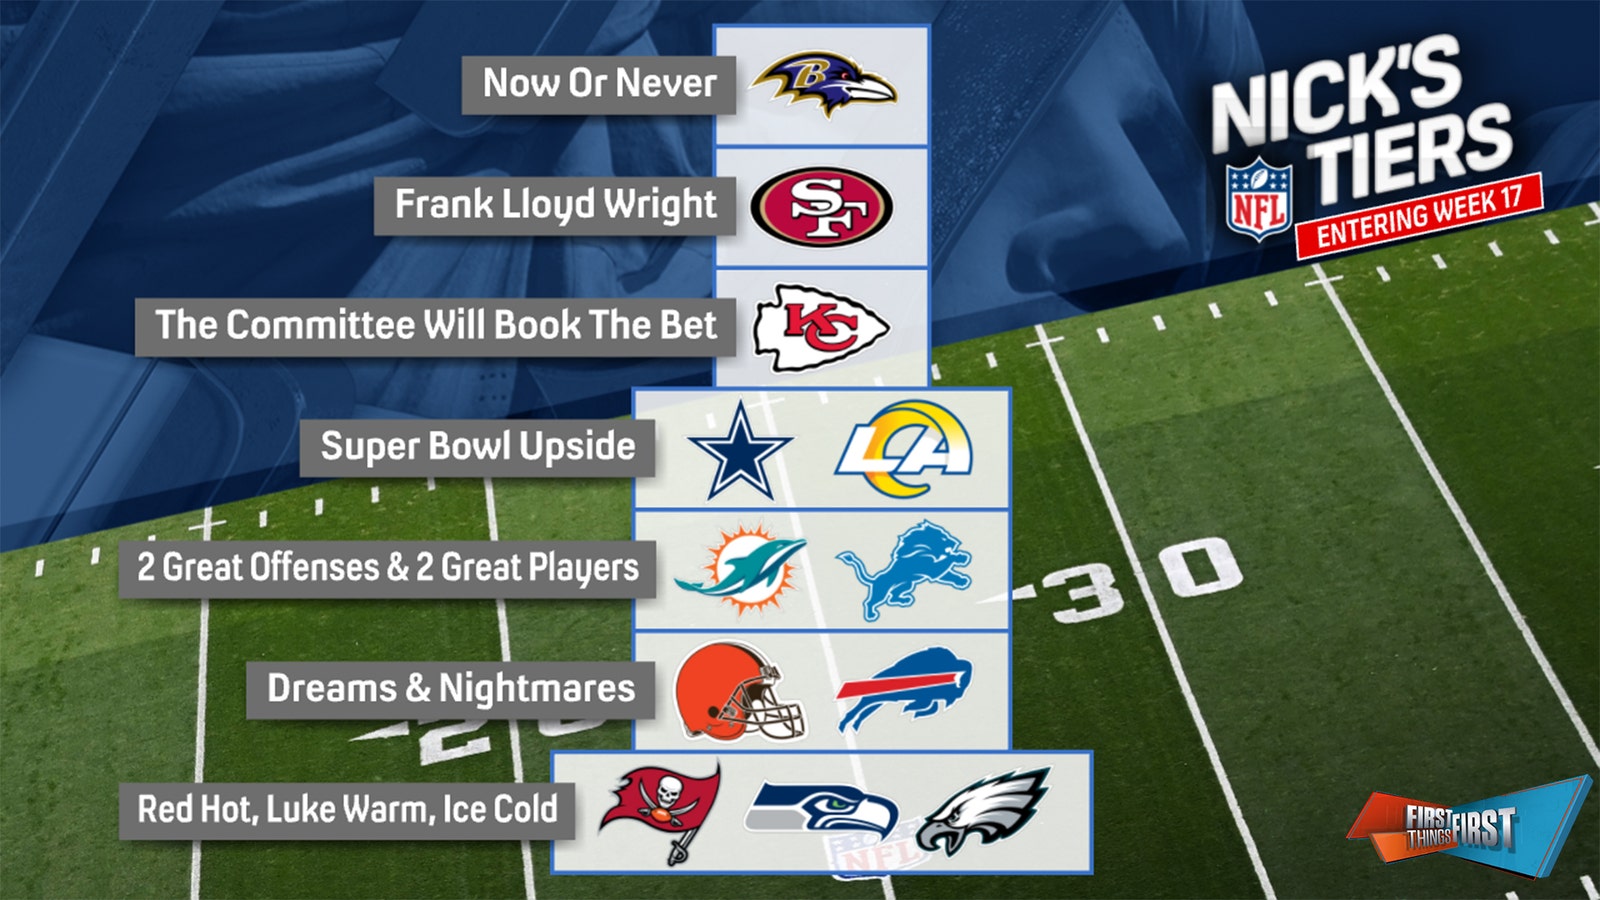 Ravens top Nick Wright's NFL Tiers entering Week 17 